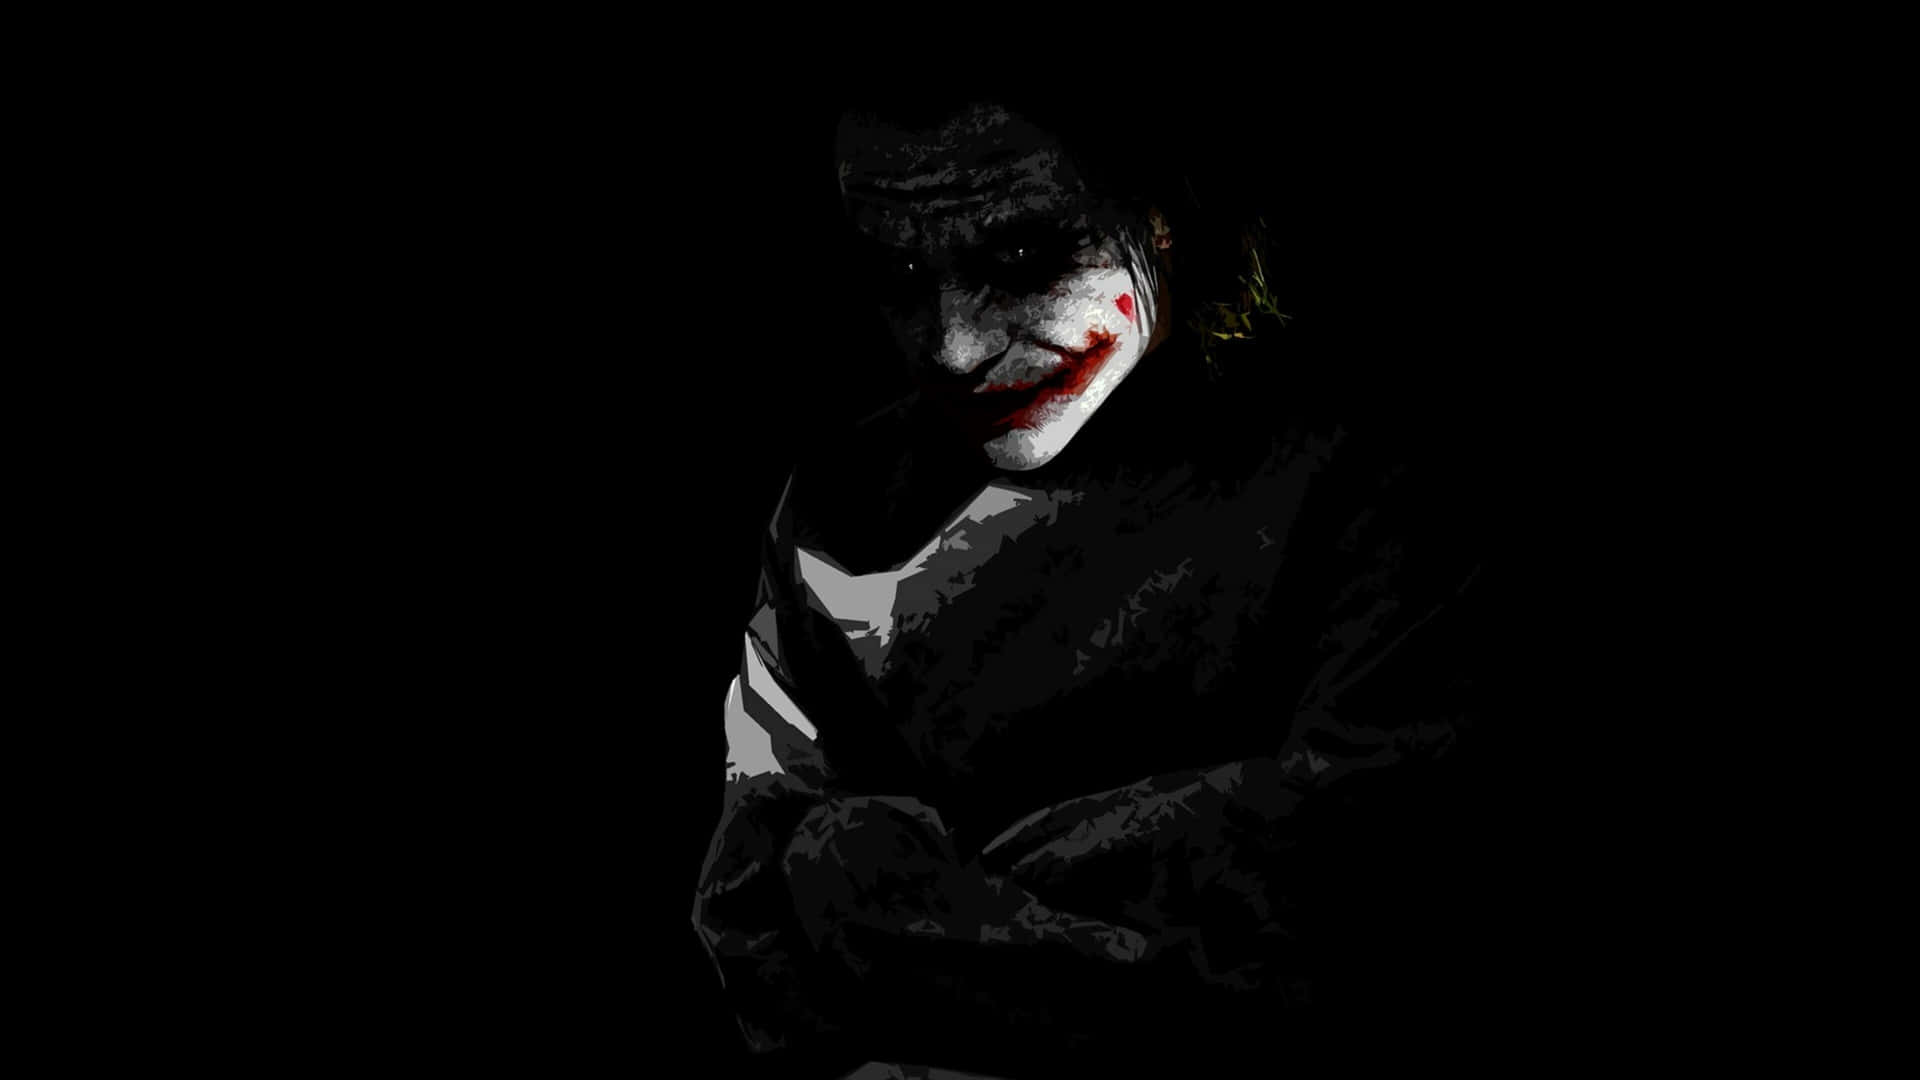 Jokerhintergrundbilder Hd Hintergrundbilder Wallpaper